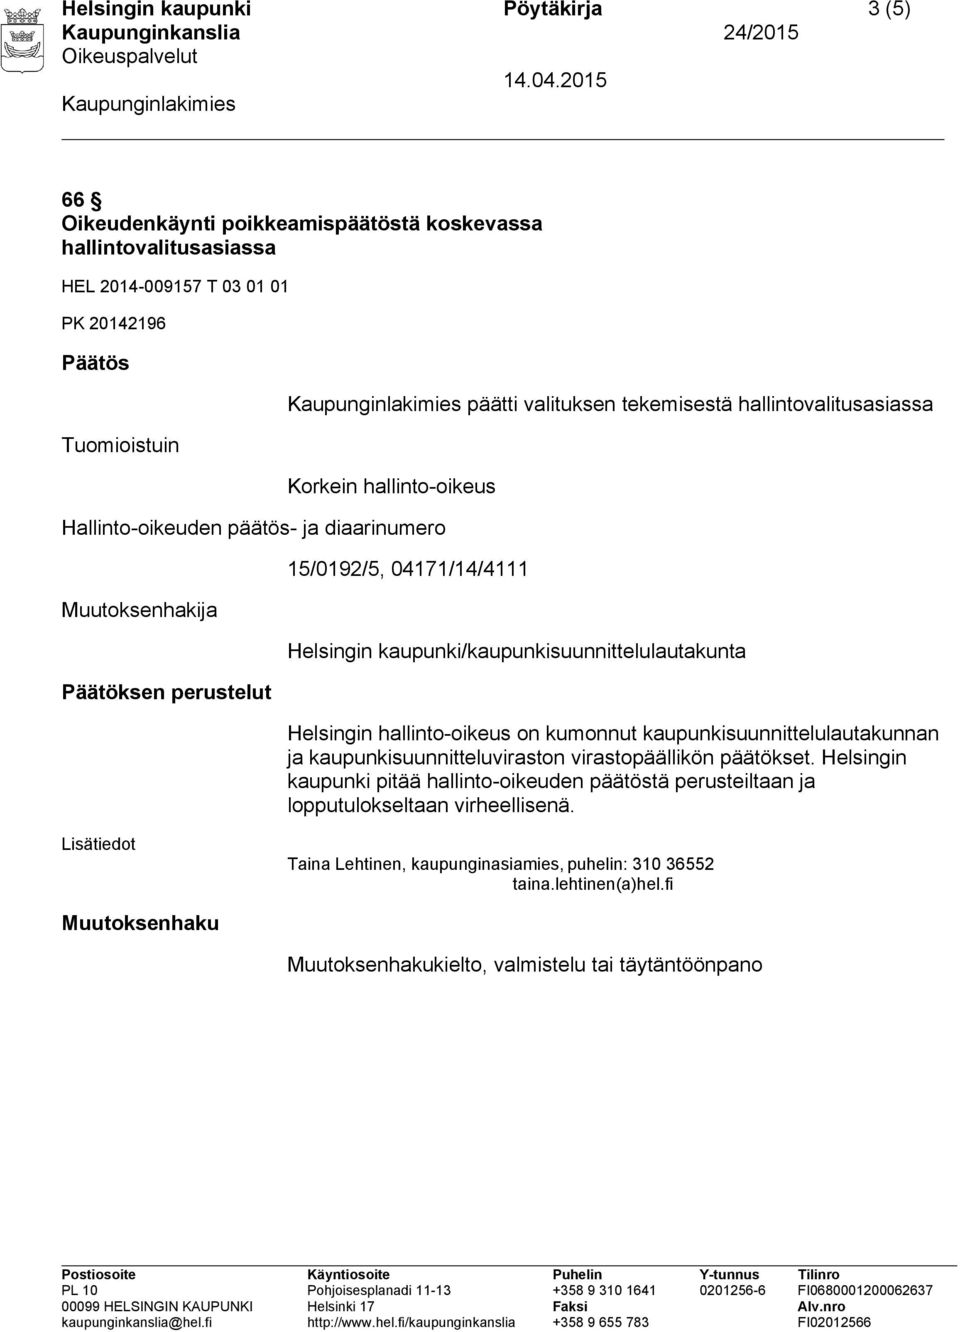 kaupunki/kaupunkisuunnittelulautakunta Helsingin hallinto-oikeus on kumonnut kaupunkisuunnittelulautakunnan ja kaupunkisuunnitteluviraston virastopäällikön päätökset.